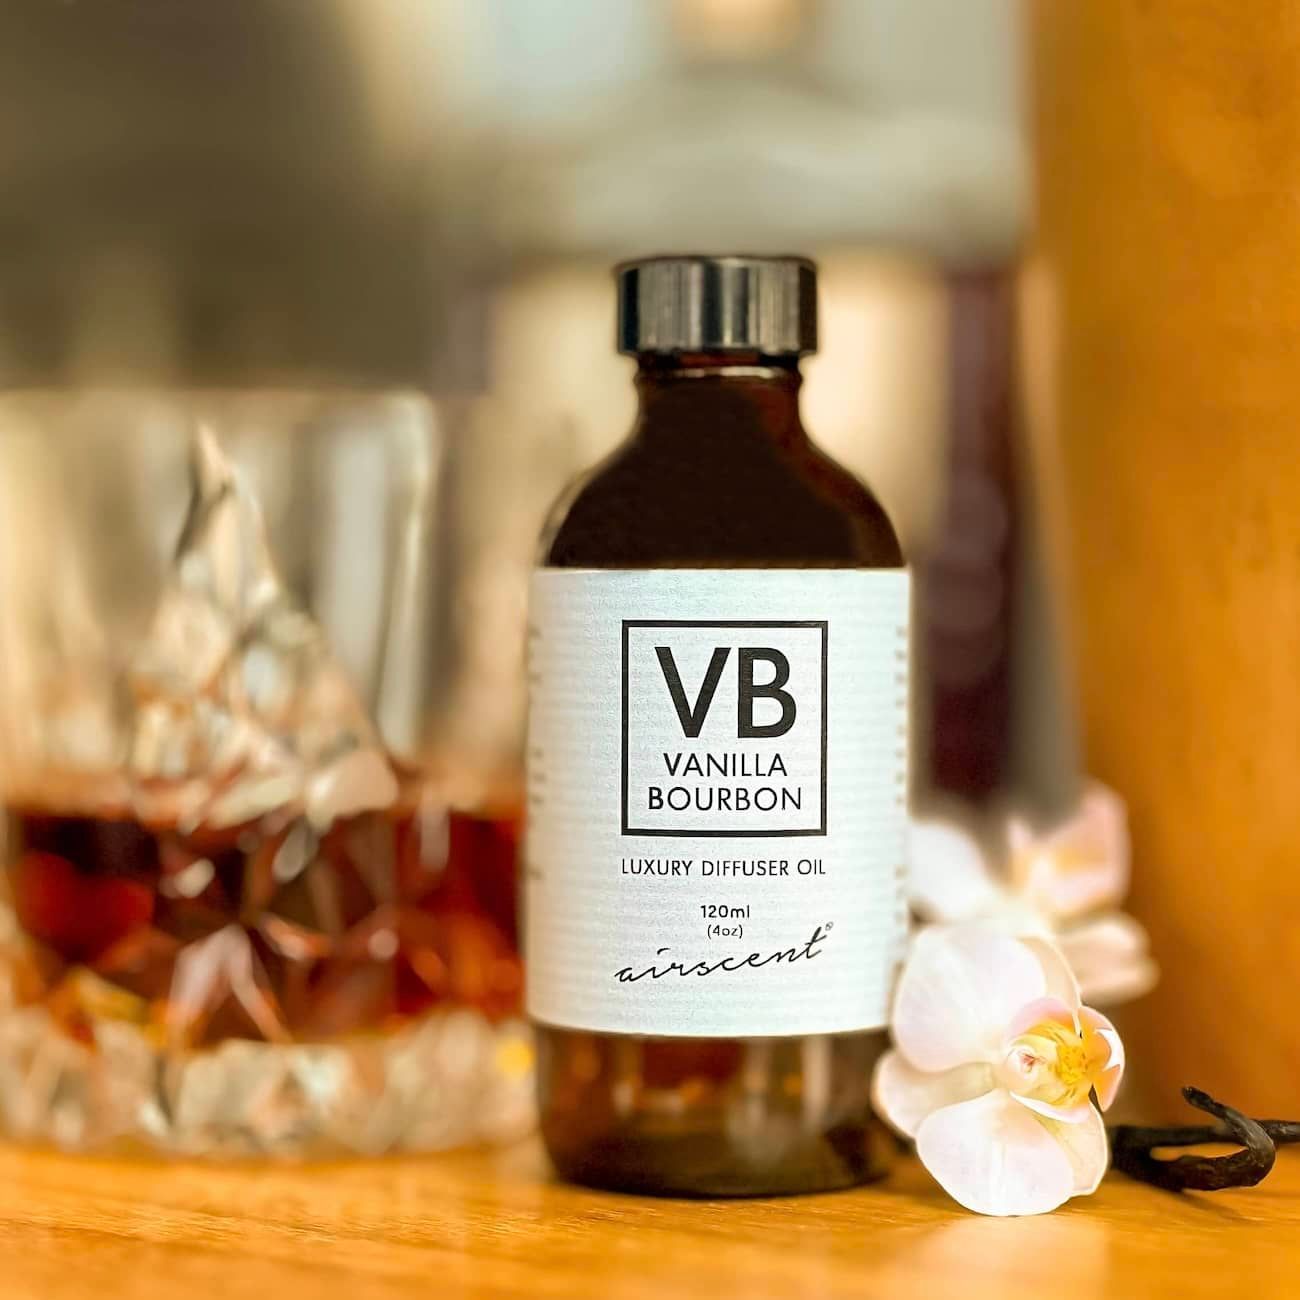 Vanilla Bourbon diffuser oil essential oil blend